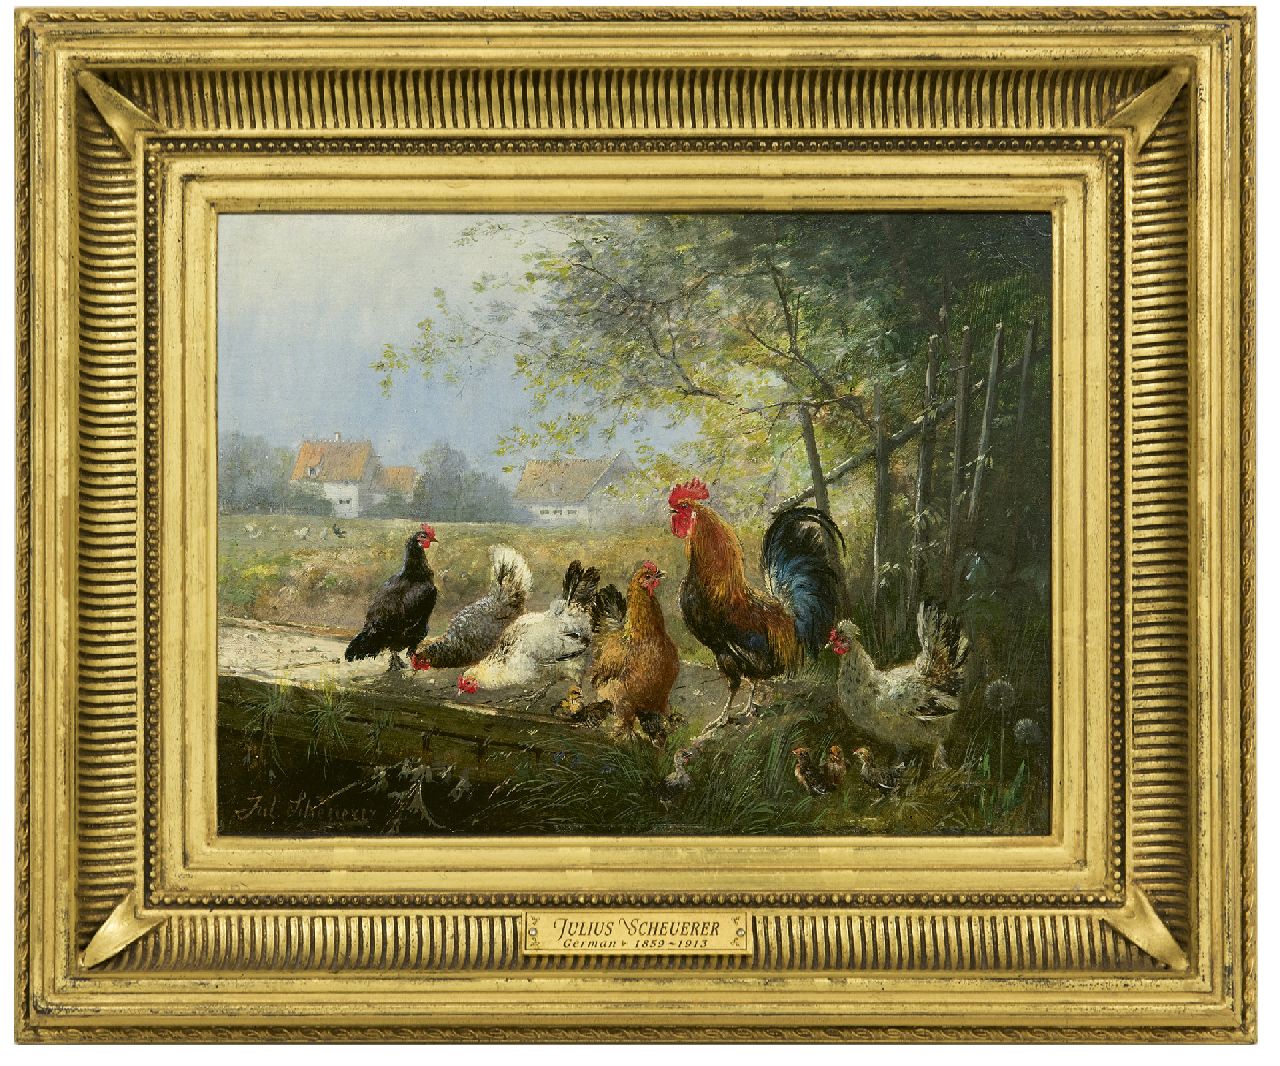 Scheuerer J.  | Julius Scheuerer, Haan met zijn kippen, olieverf op paneel 18,7 x 24,4 cm, gesigneerd linksonder